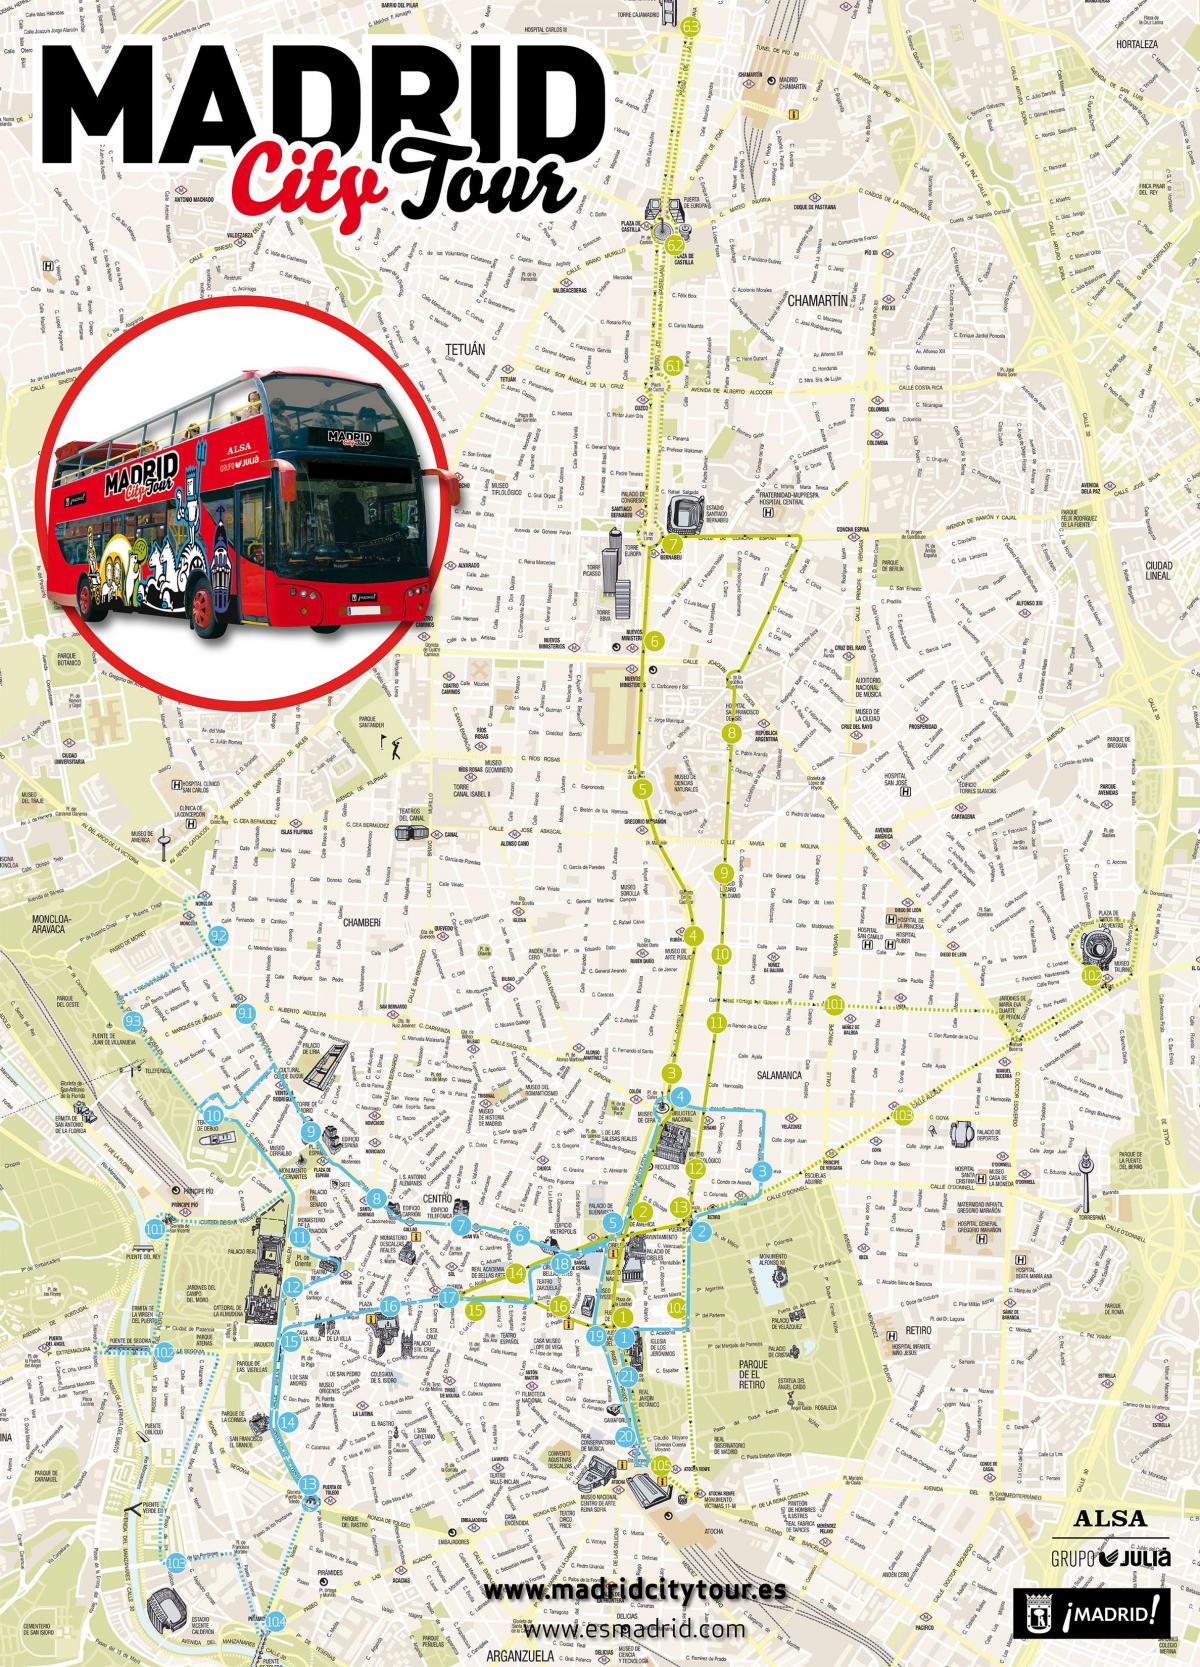 Madride, ekskursijos miesto žemėlapis